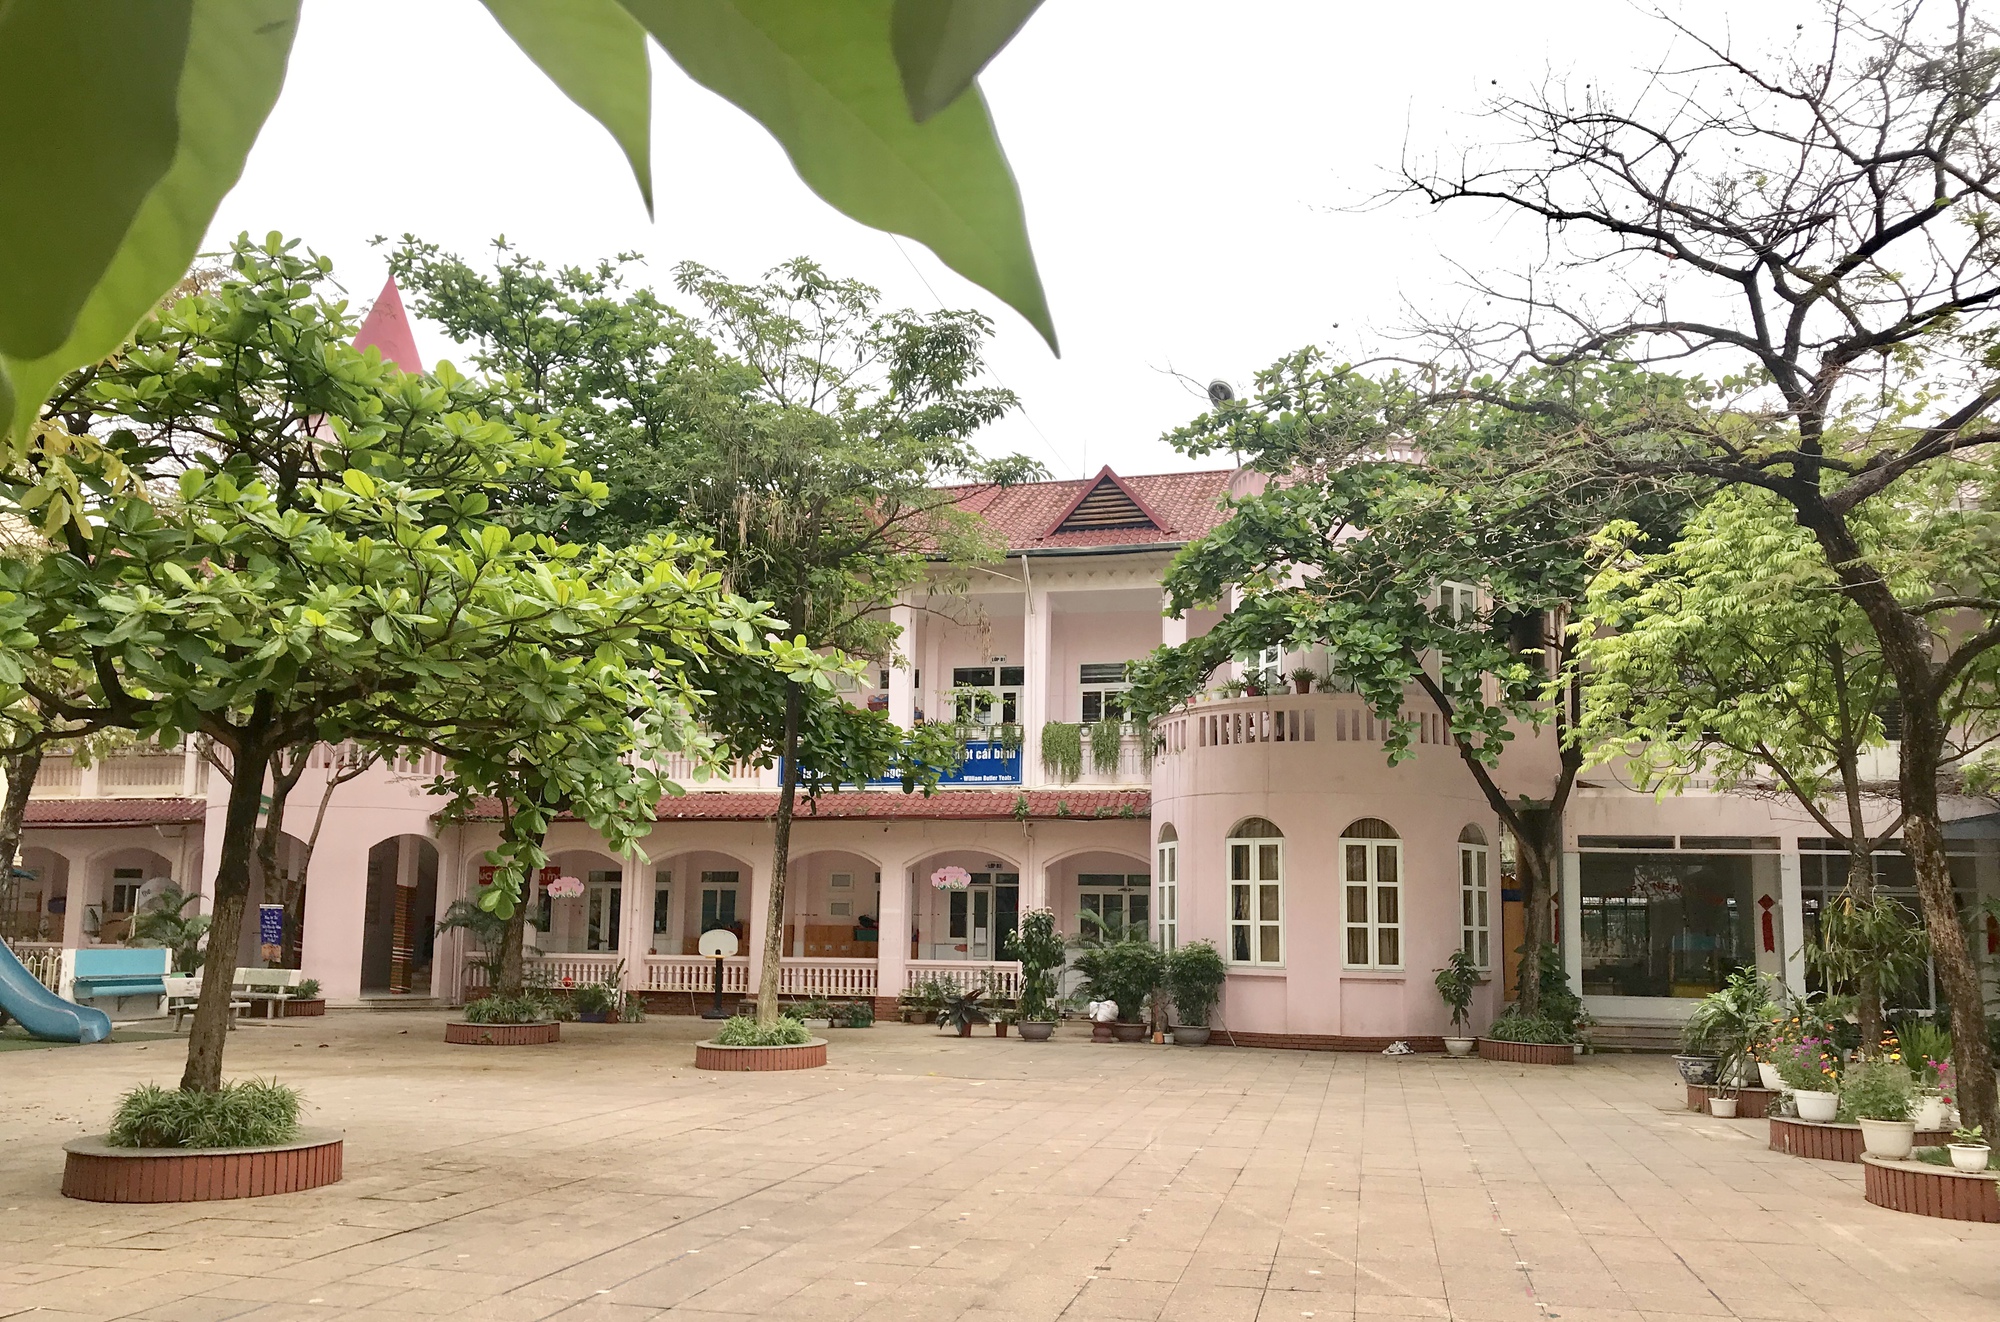 Các trường mầm non CÔNG LẬP to đẹp, rộng rãi ở Hà Nội, phụ huynh có thể tham khảo - Ảnh 8.